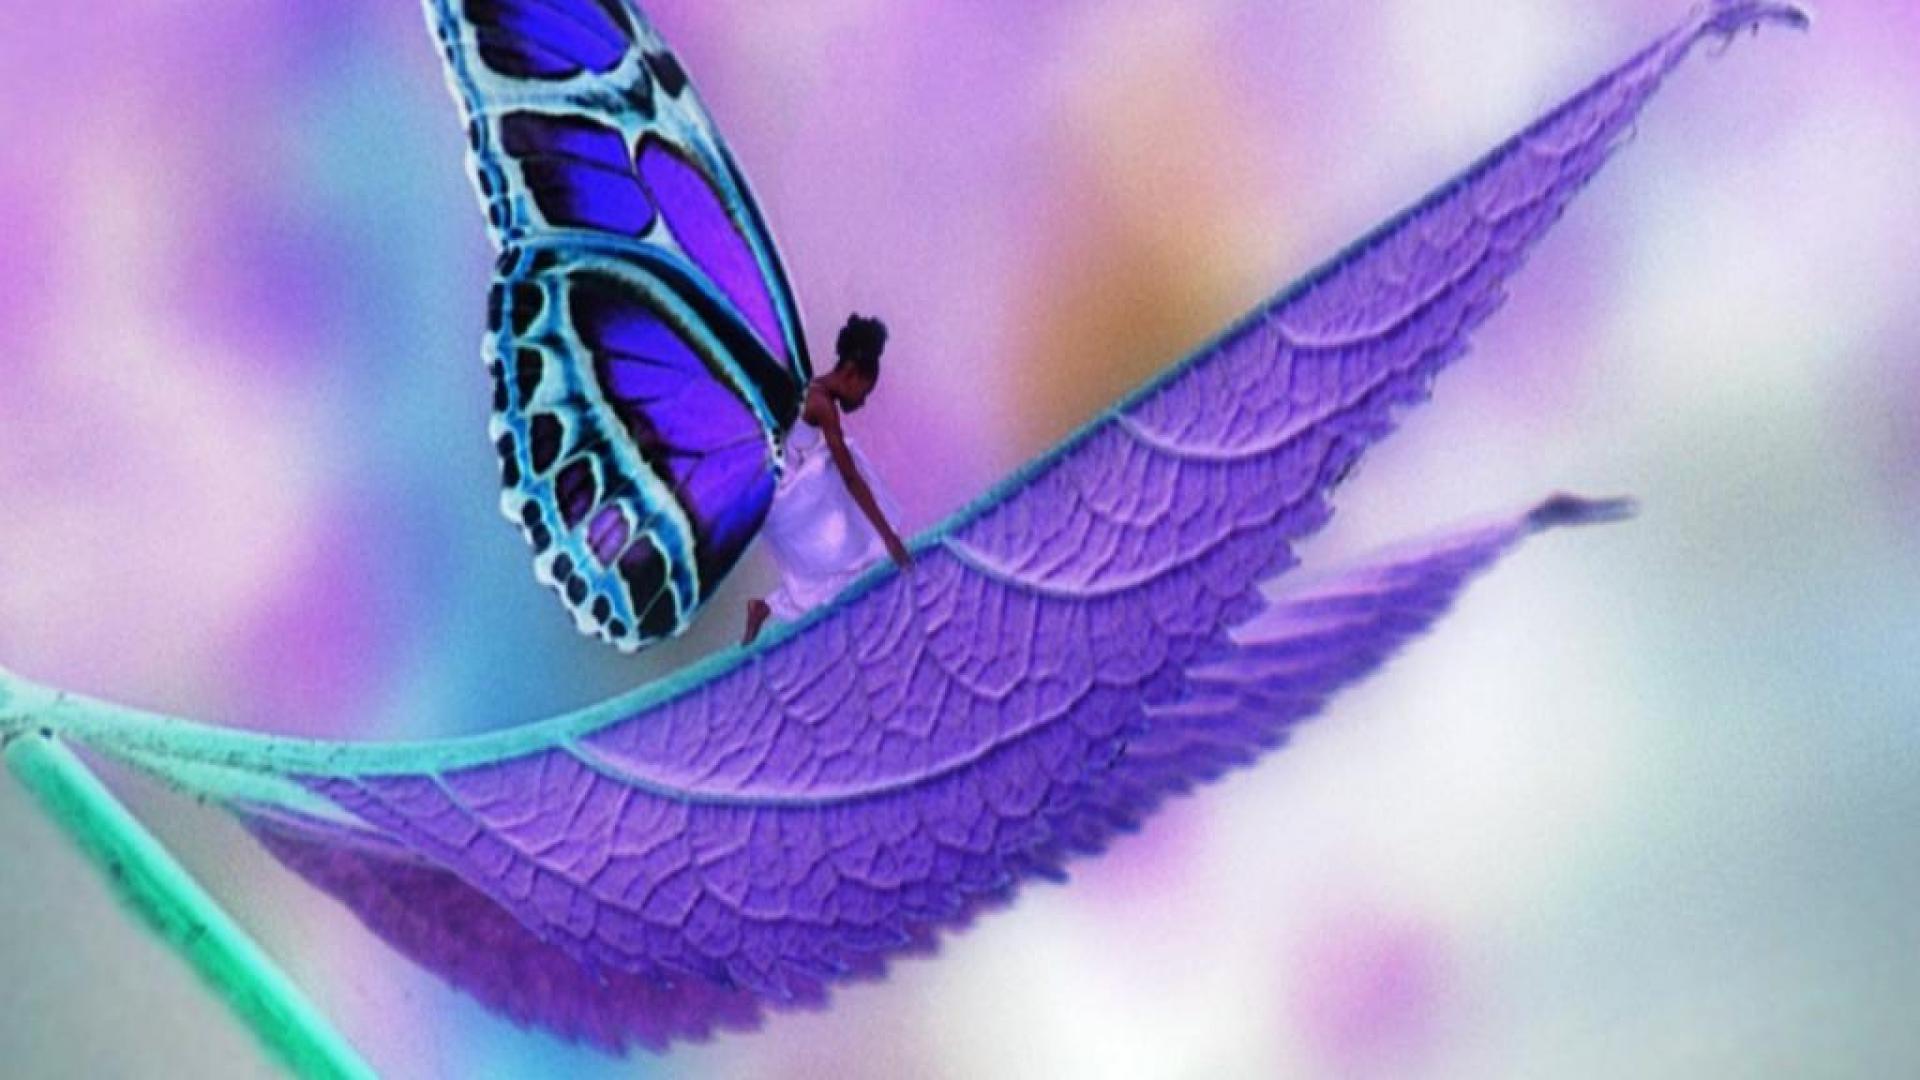 Best Butterfly iPhone HD Wallpapers  iLikeWallpaper